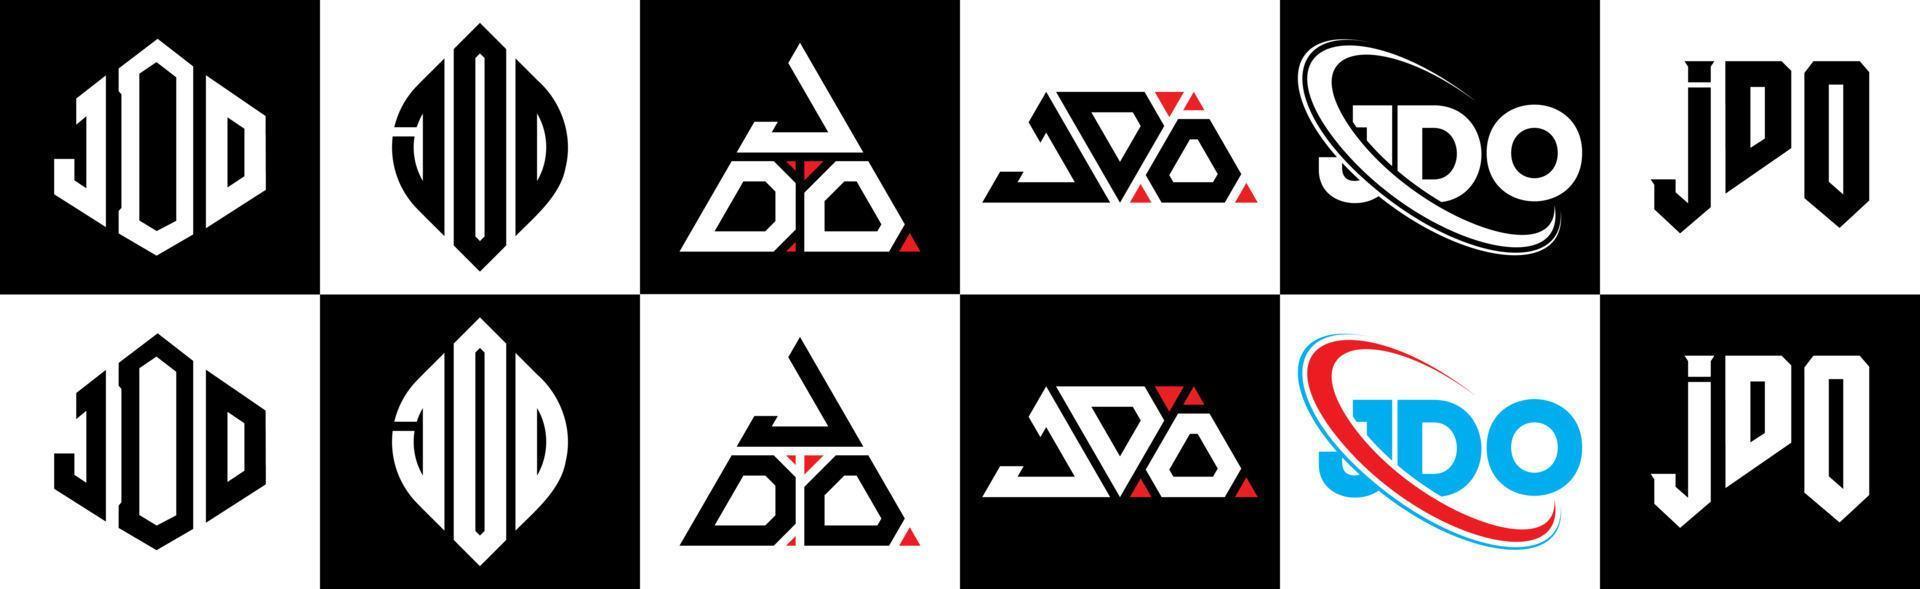 Jdo-Buchstaben-Logo-Design in sechs Stilen. jdo polygon, kreis, dreieck, sechseck, flacher und einfacher stil mit schwarz-weißem buchstabenlogo in einer zeichenfläche. jdo minimalistisches und klassisches Logo vektor